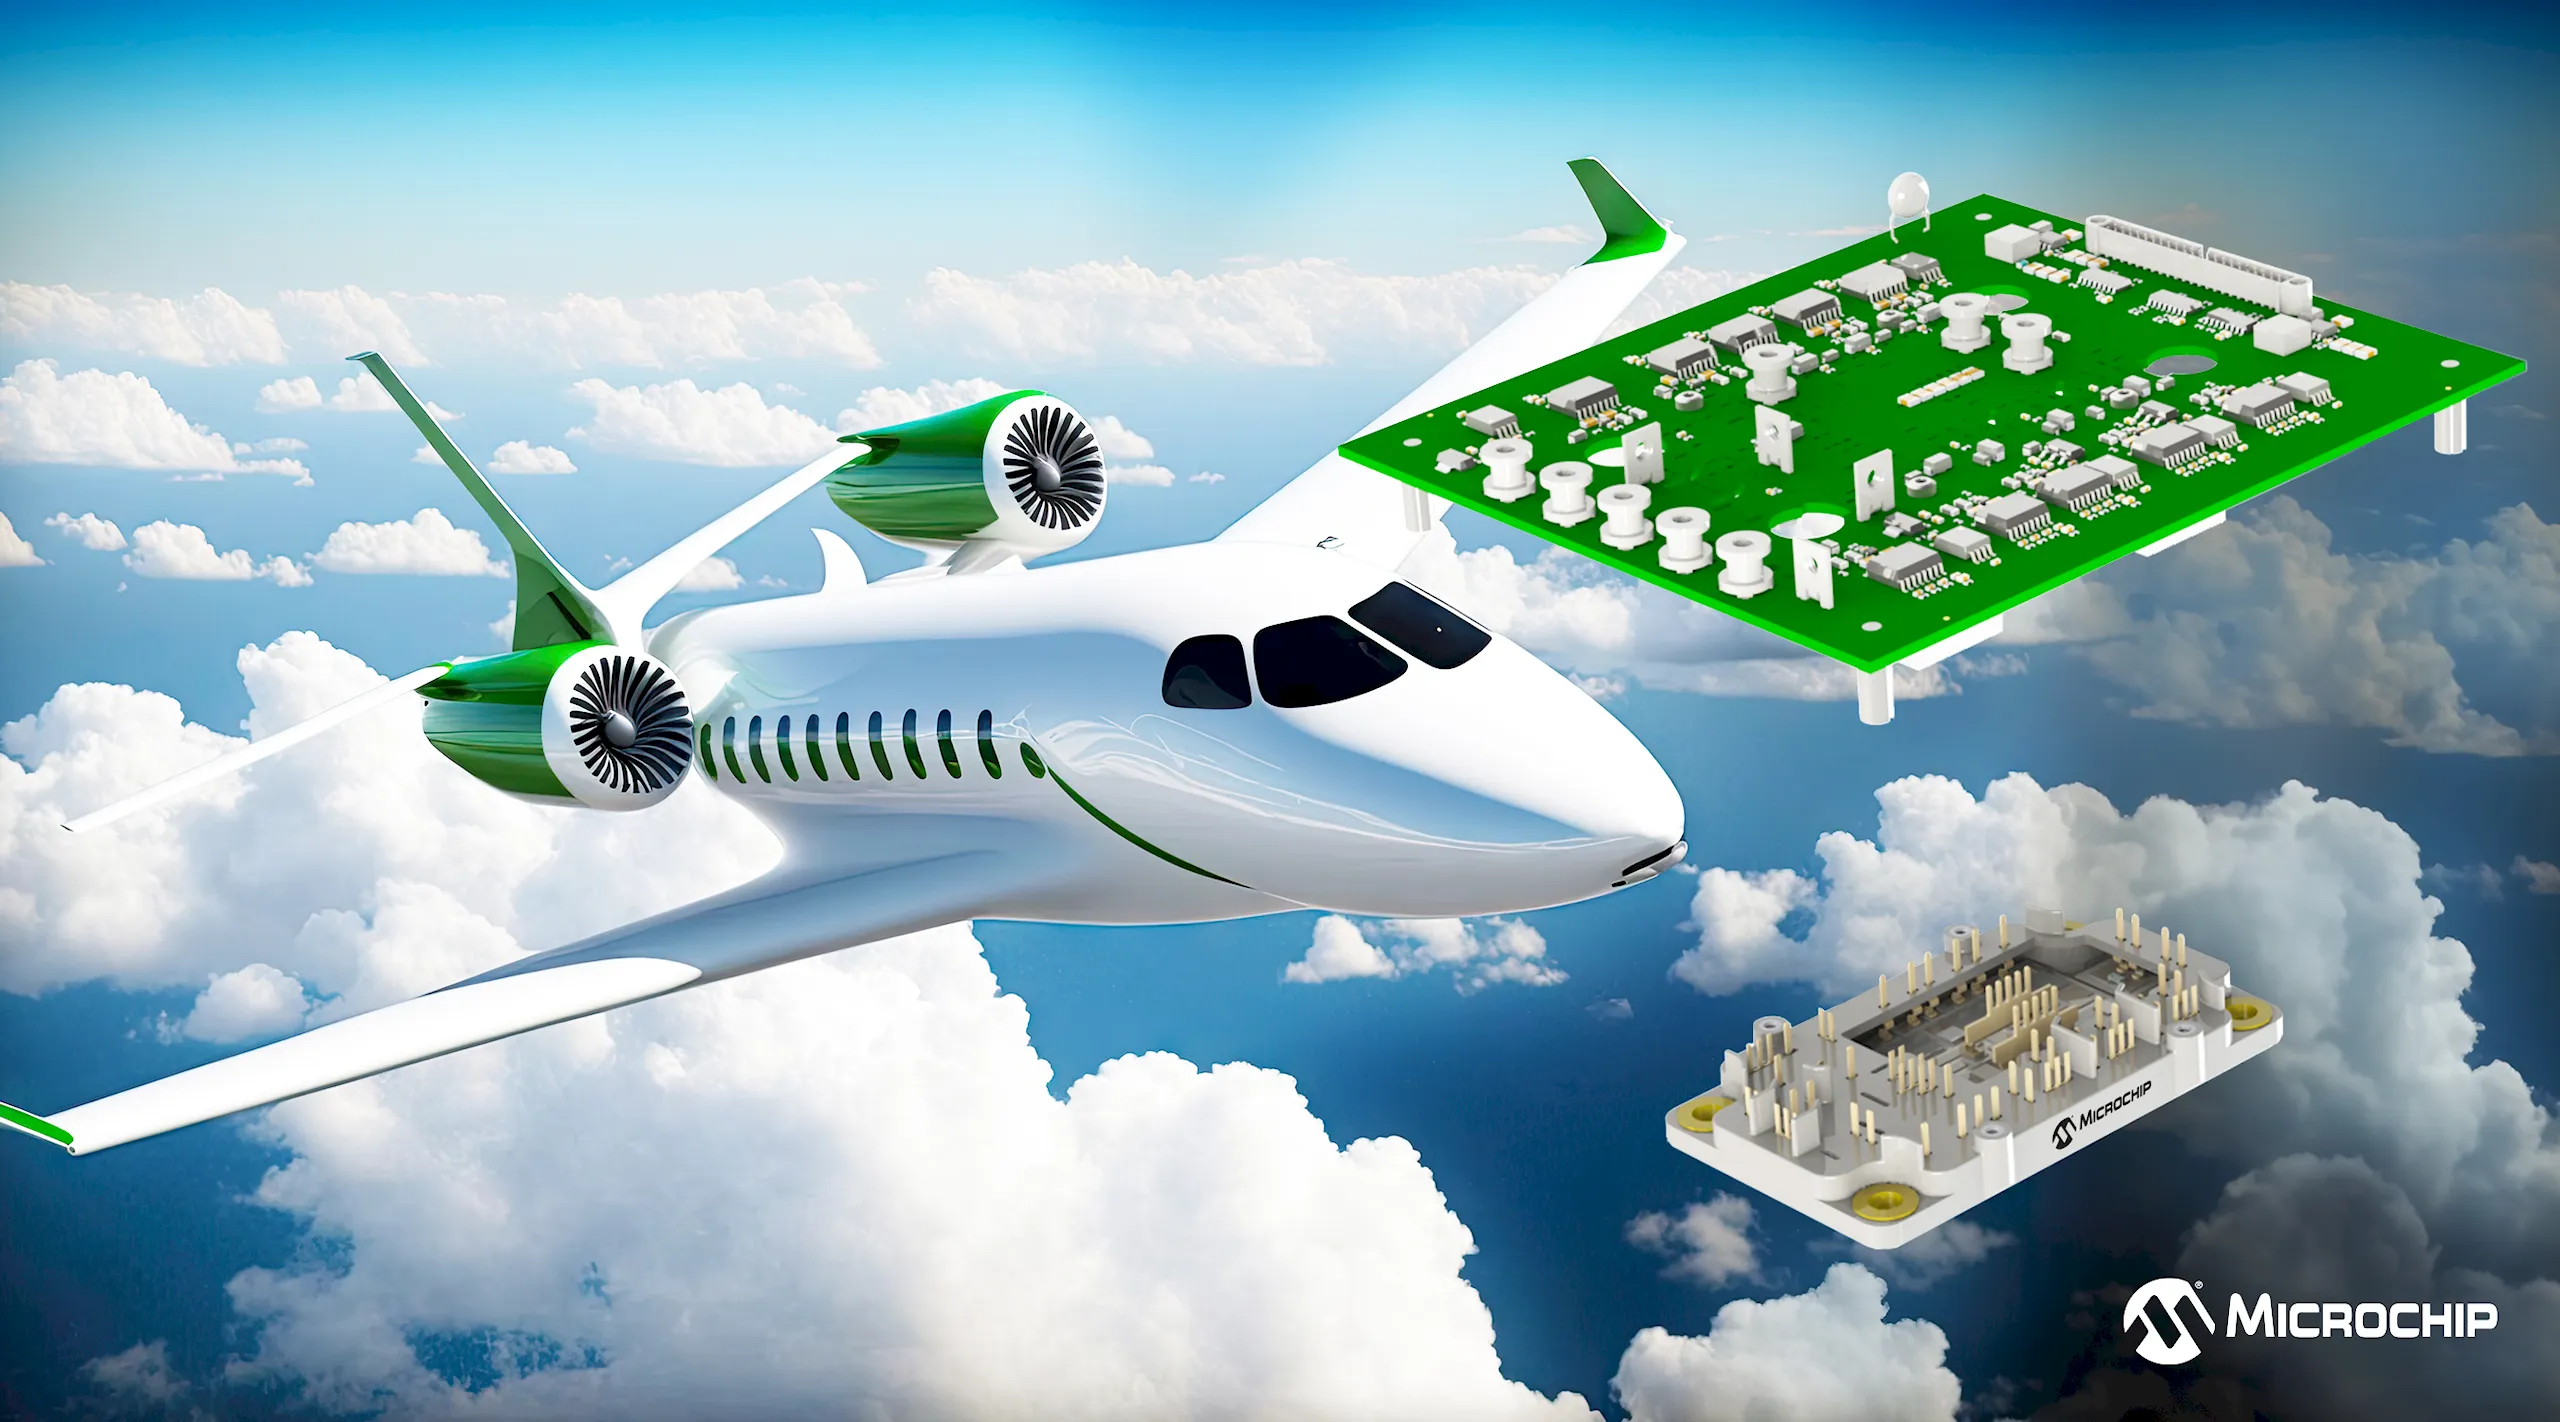 Giải pháp năng lượng truyền động tích hợp giúp đơn giản hóa quá trình chuyển đổi sang máy bay sử dụng điện nhiều hơn của của ngành hàng không